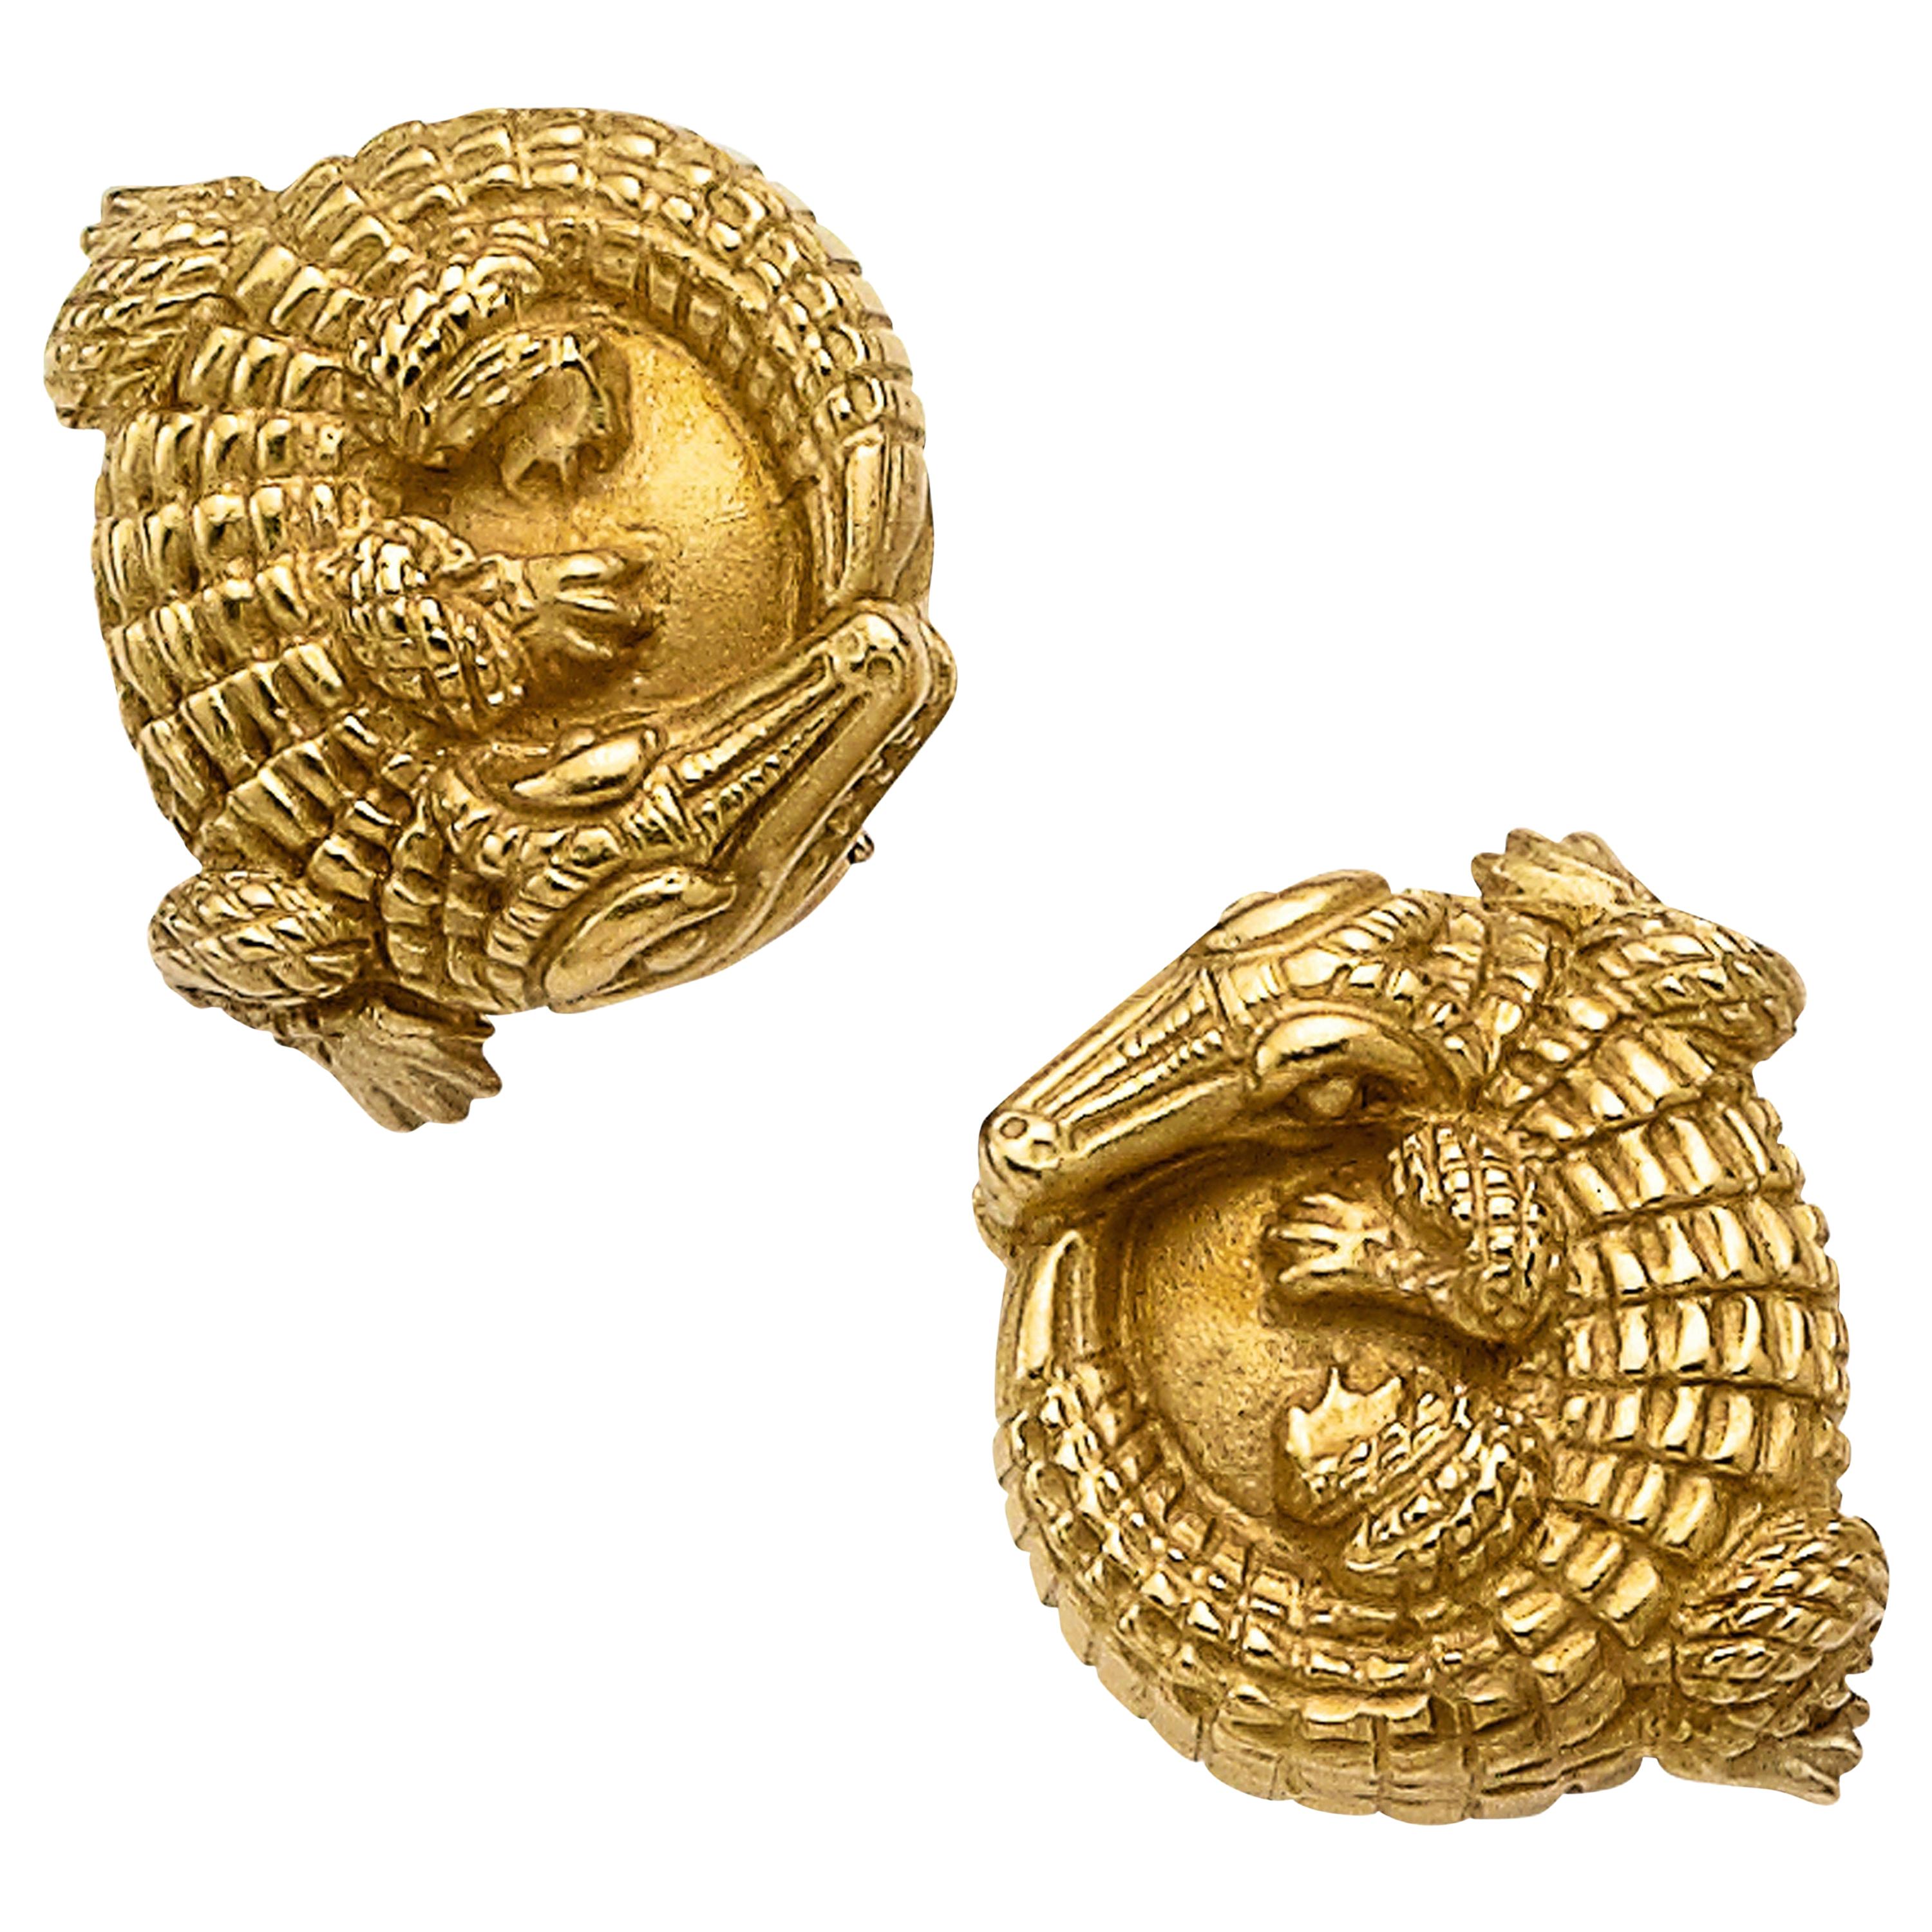 Alligator Clip-On Earrings Set in 18 Karat Yellow Gold, Signed Kieselstein Cord